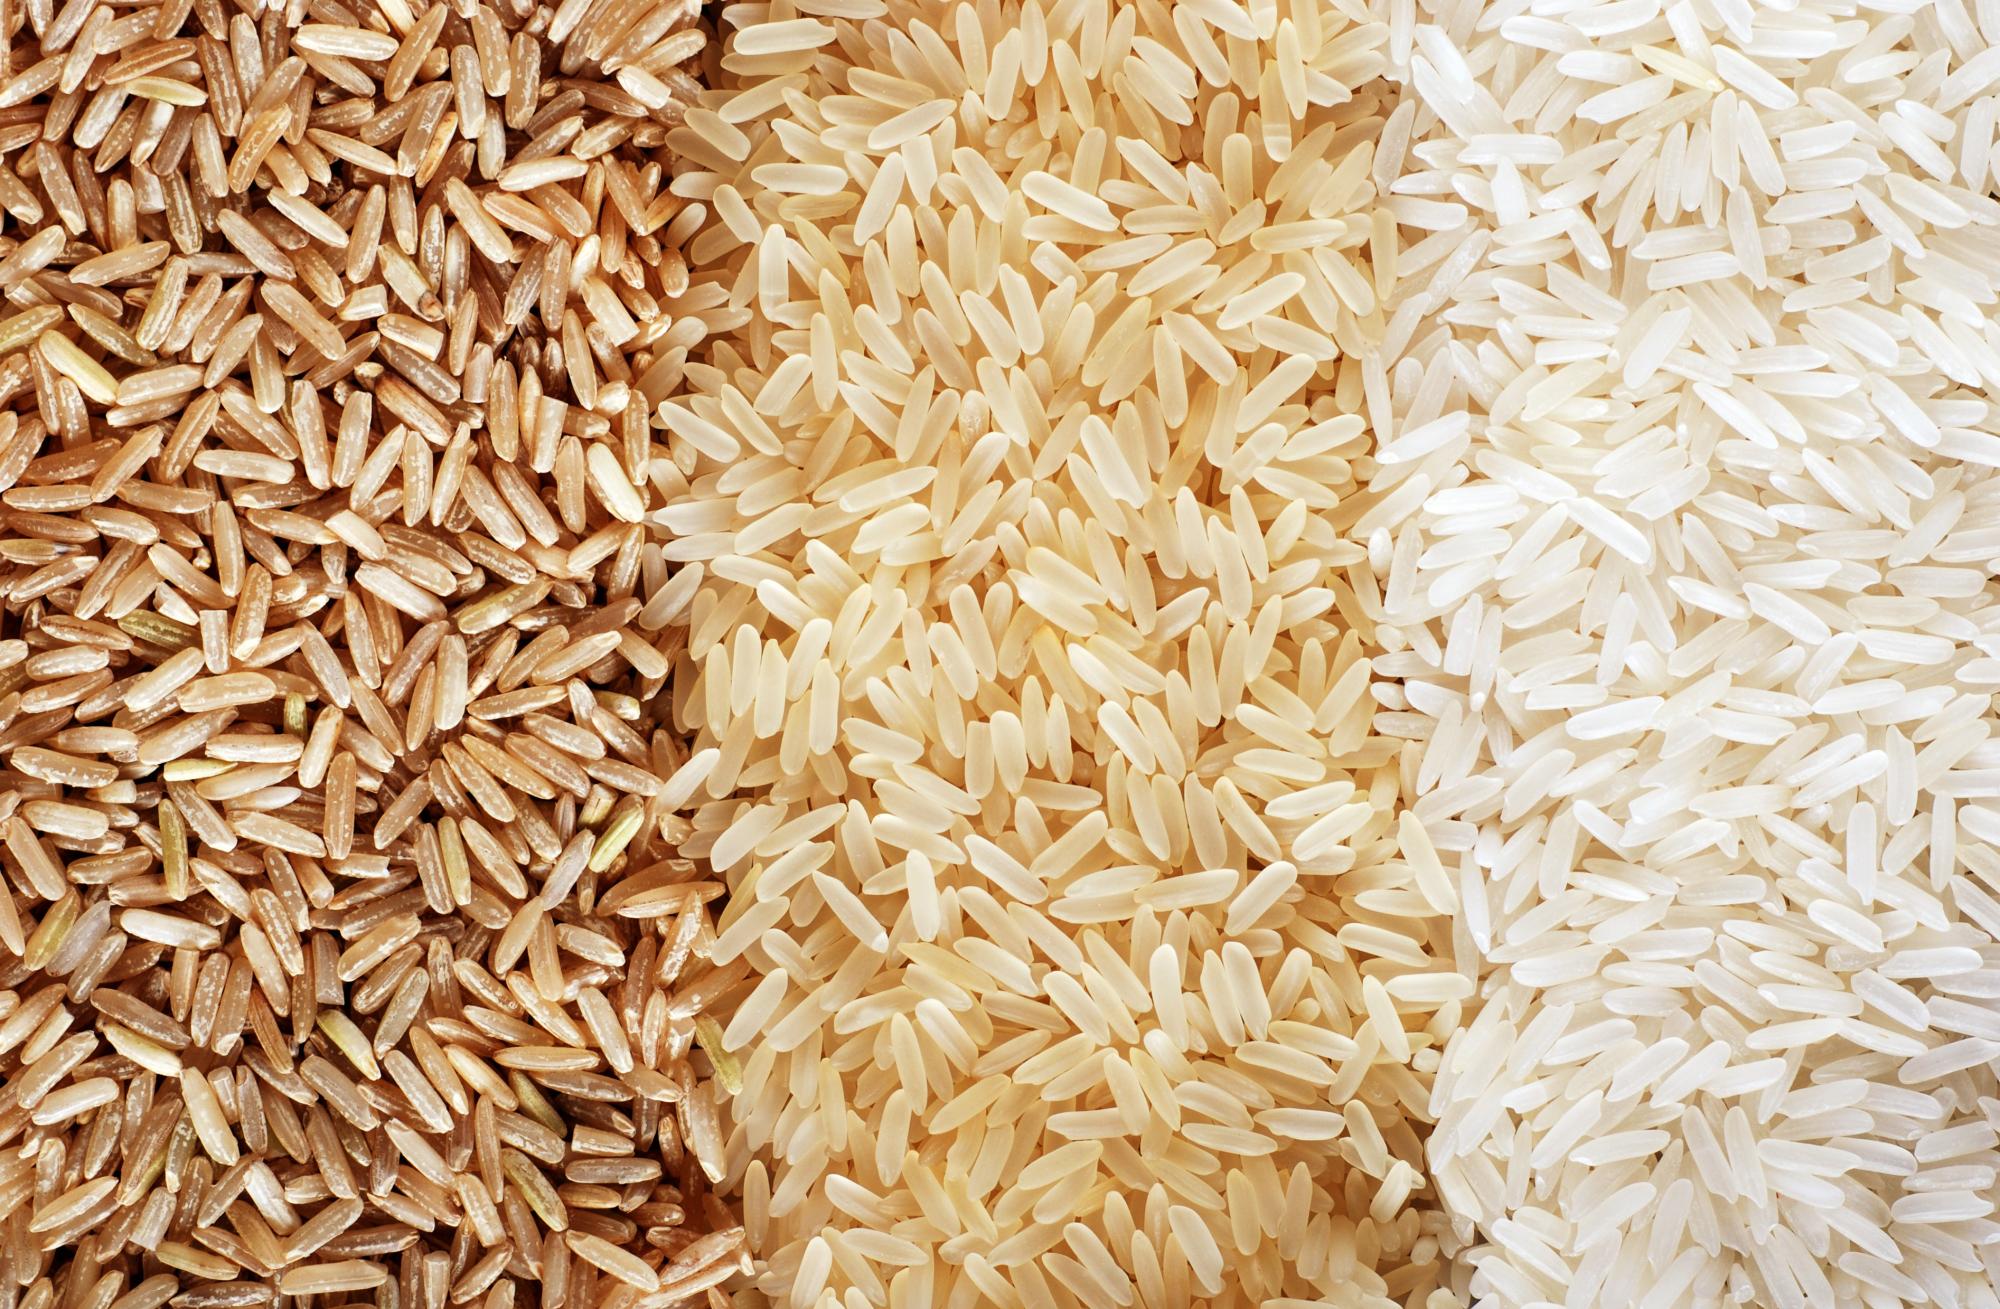 ООН ужесточает нормы по концентрации мышьяка в рисе и свинца в детских смесях